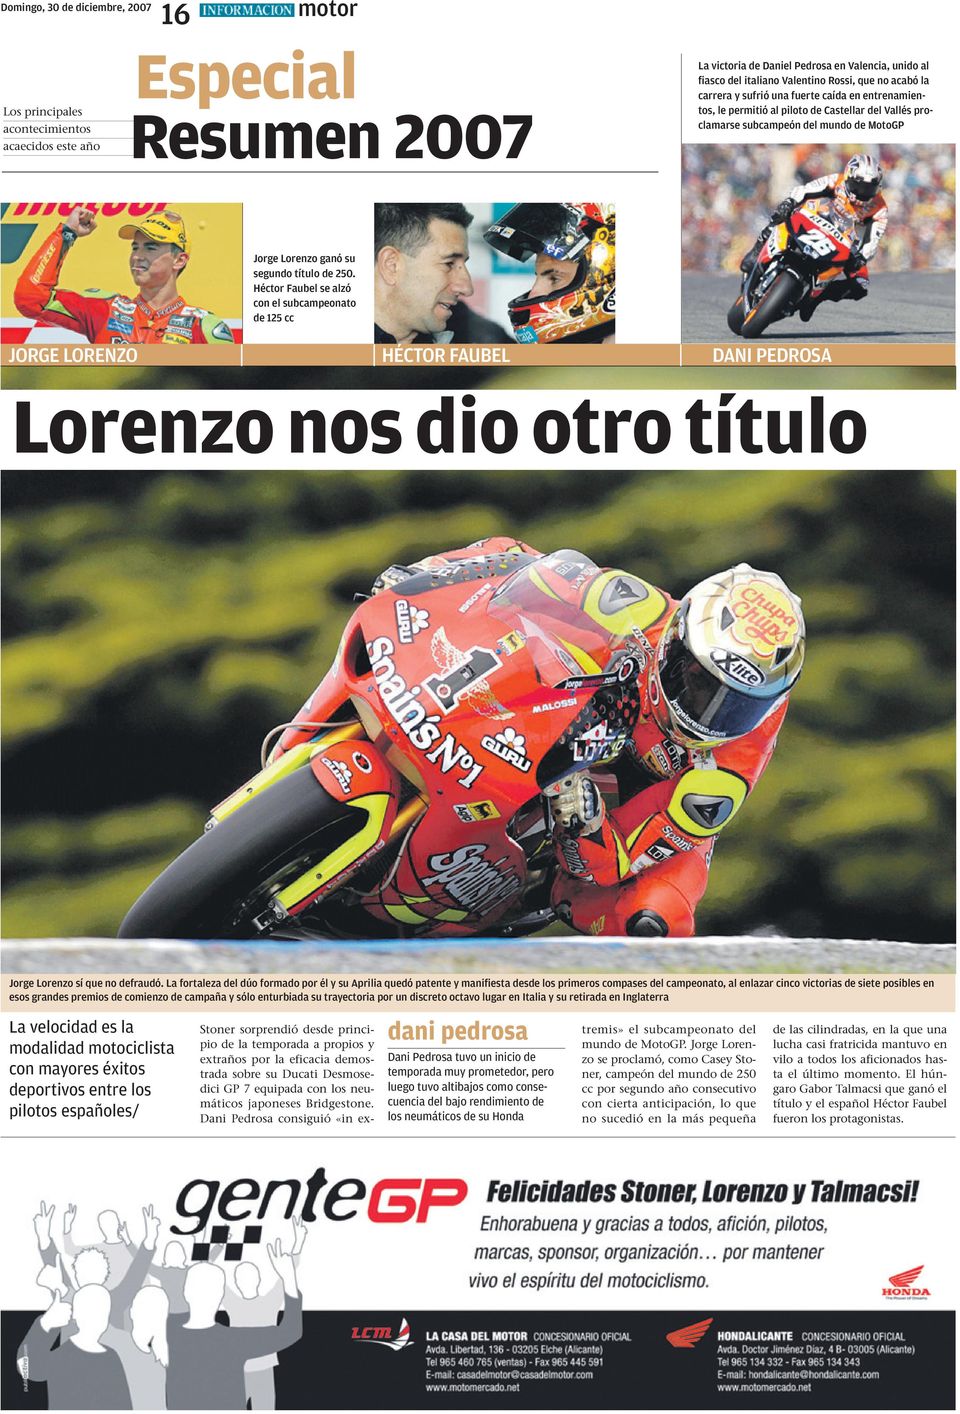 título de 250. Héctor Faubel se alzó con el subcampeonato de 125 cc JORGE LORENZO HÉCTOR FAUBEL DANI PEDROSA Lorenzo nos dio otro título Jorge Lorenzo sí que no defraudó.